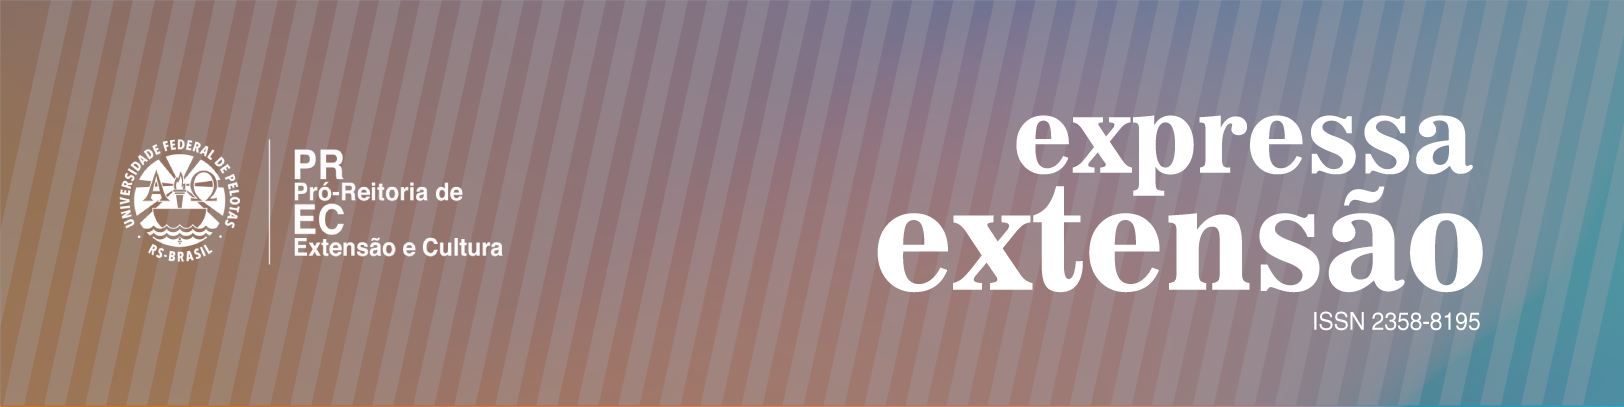 Revista Expressa Extensão v.20 n.1 estará disponível a partir do dia 15 de maio. Capa e sumário para autores conferirem.